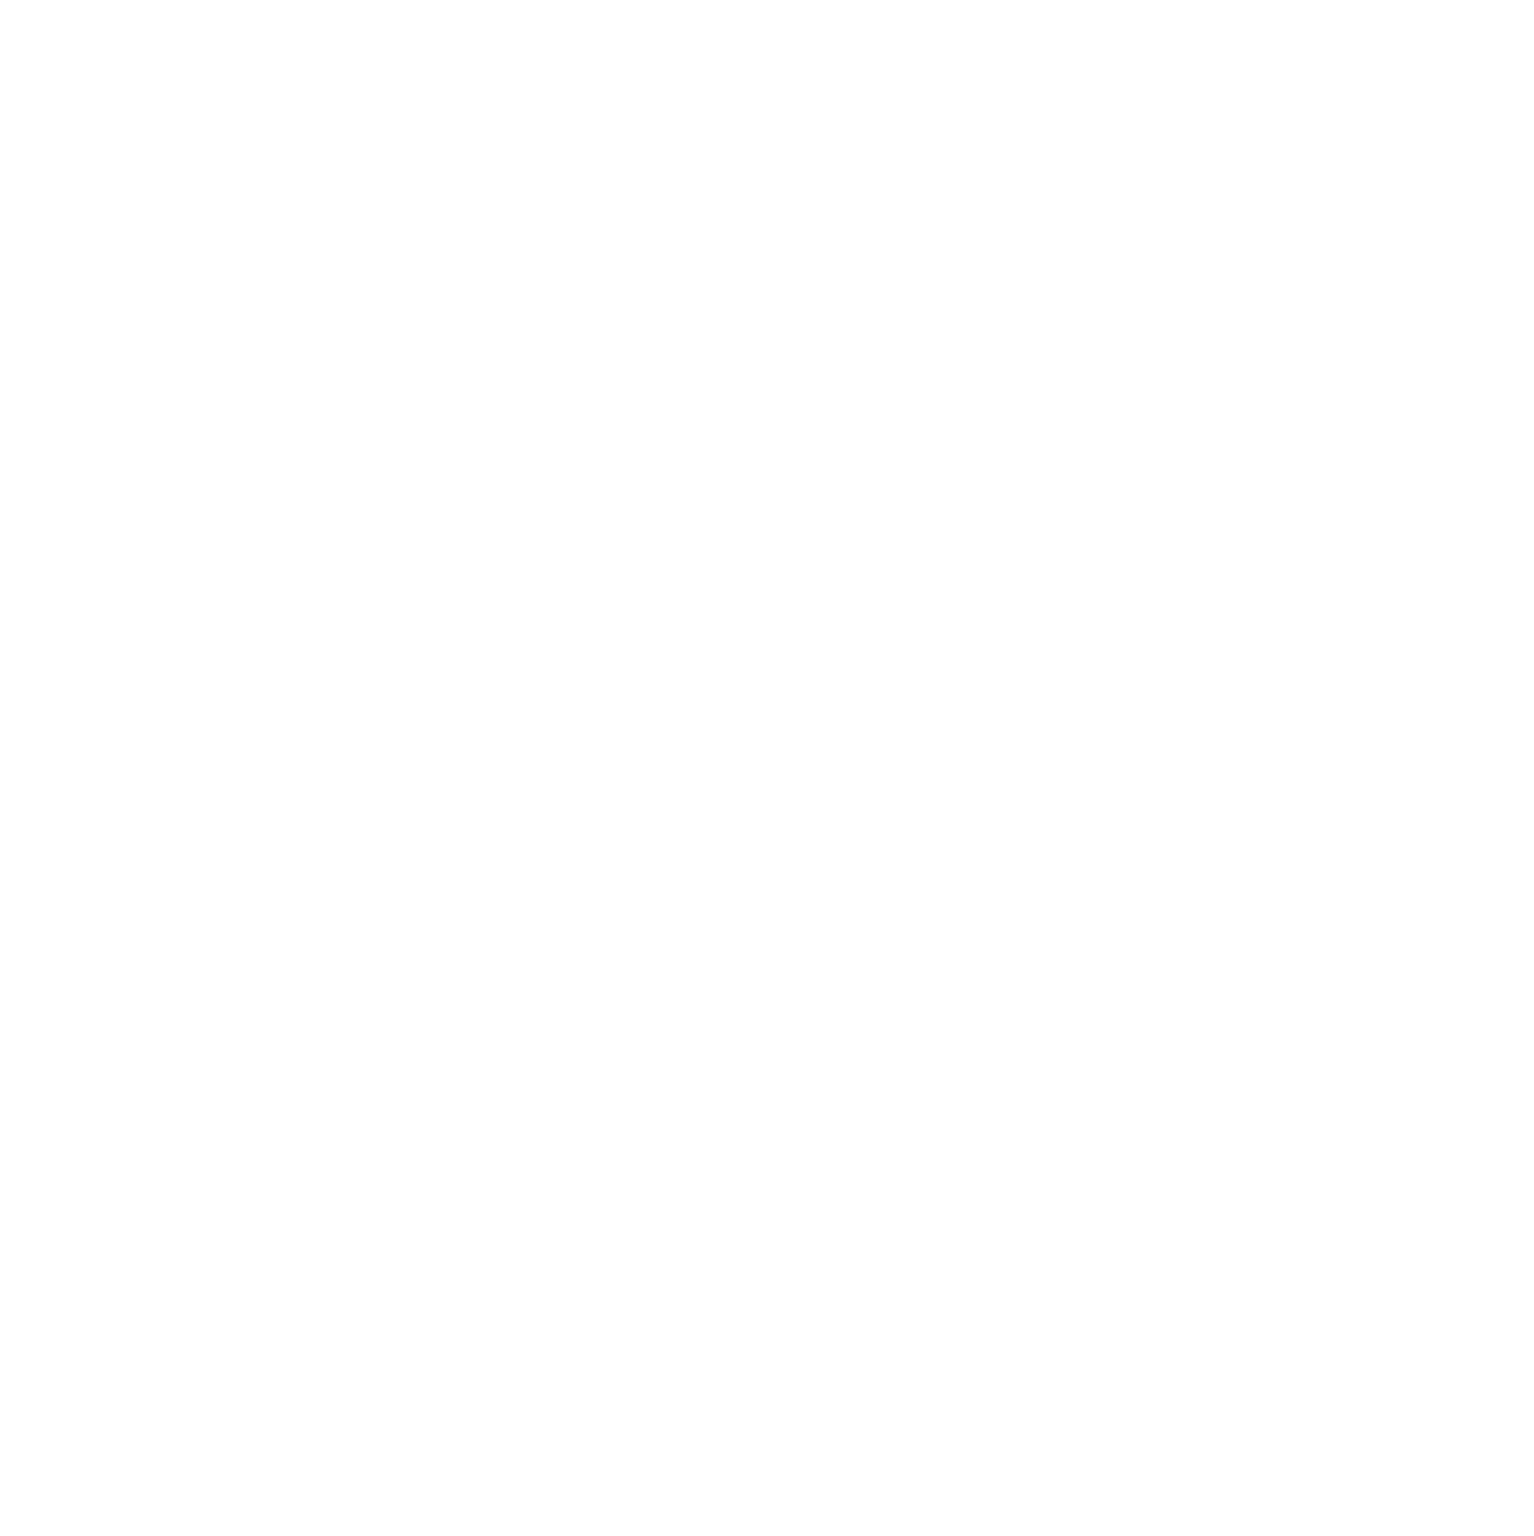 Ganfeng Lithium logo pour fonds sombres (PNG transparent)